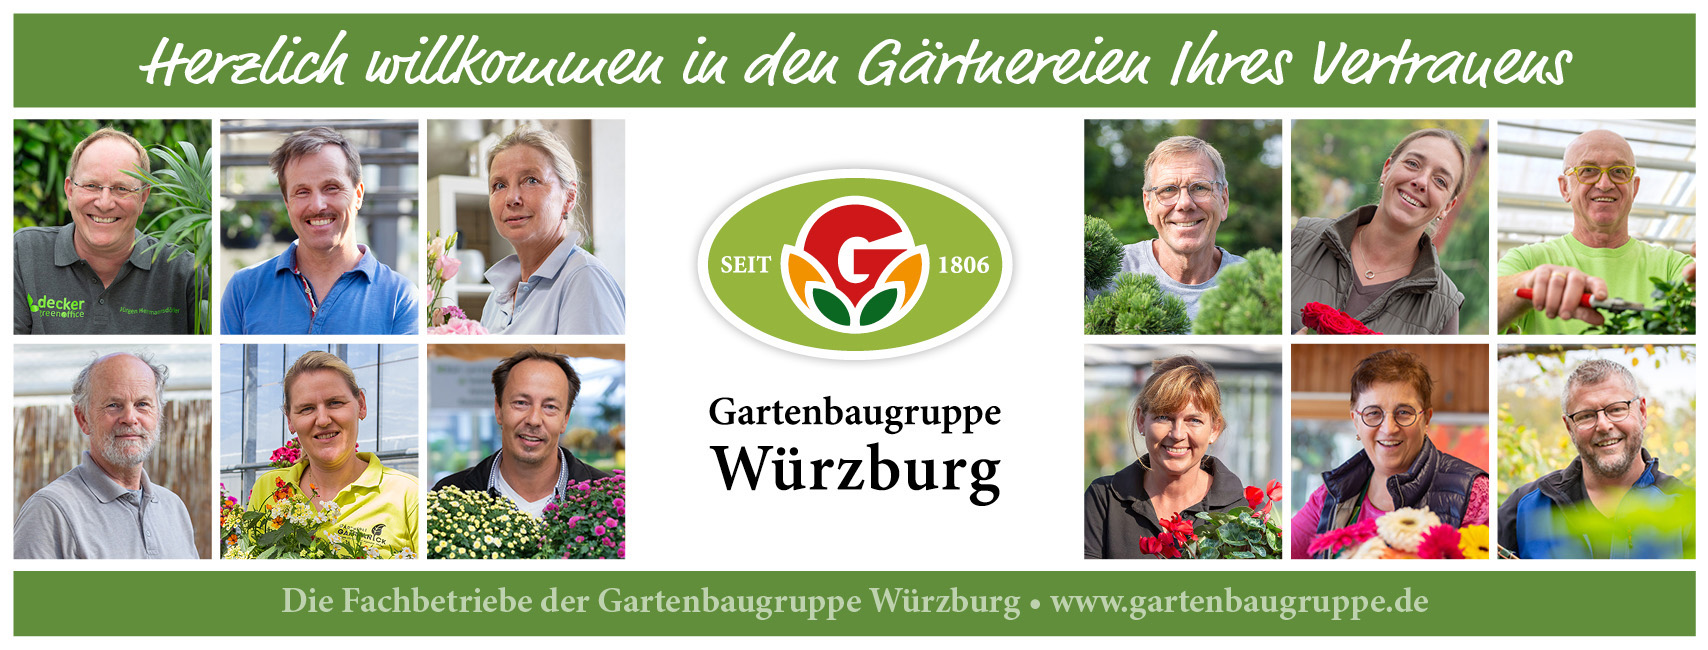 Die Gartenbaugruppe Würzburg stellt sich vor